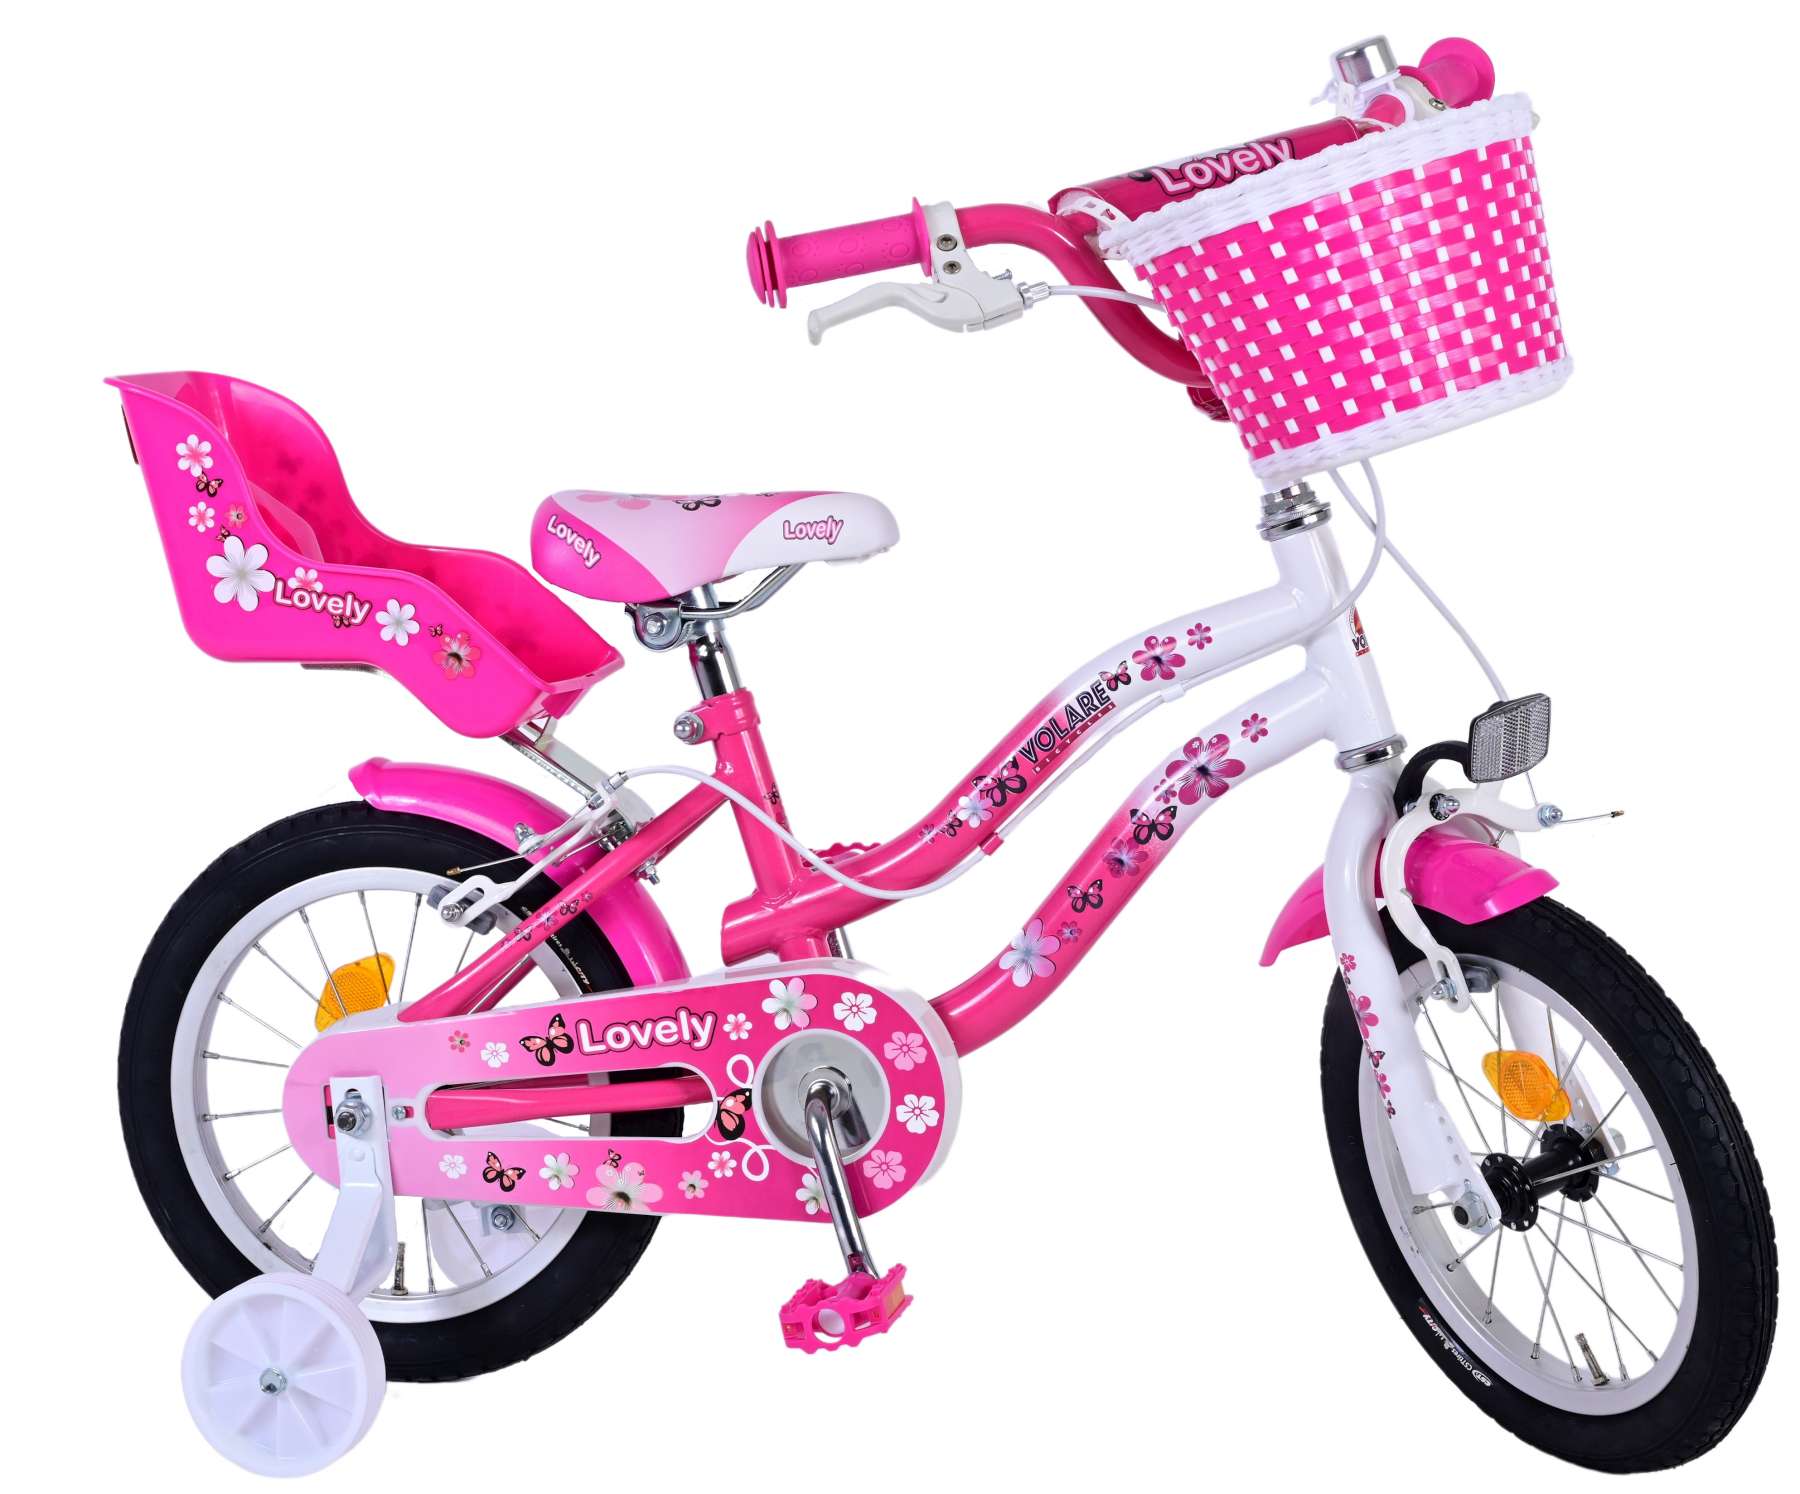 Kinderfahrrad Lovely für Mädchen 14 Zoll Kinderrad Rosa Weiß Fahrrad